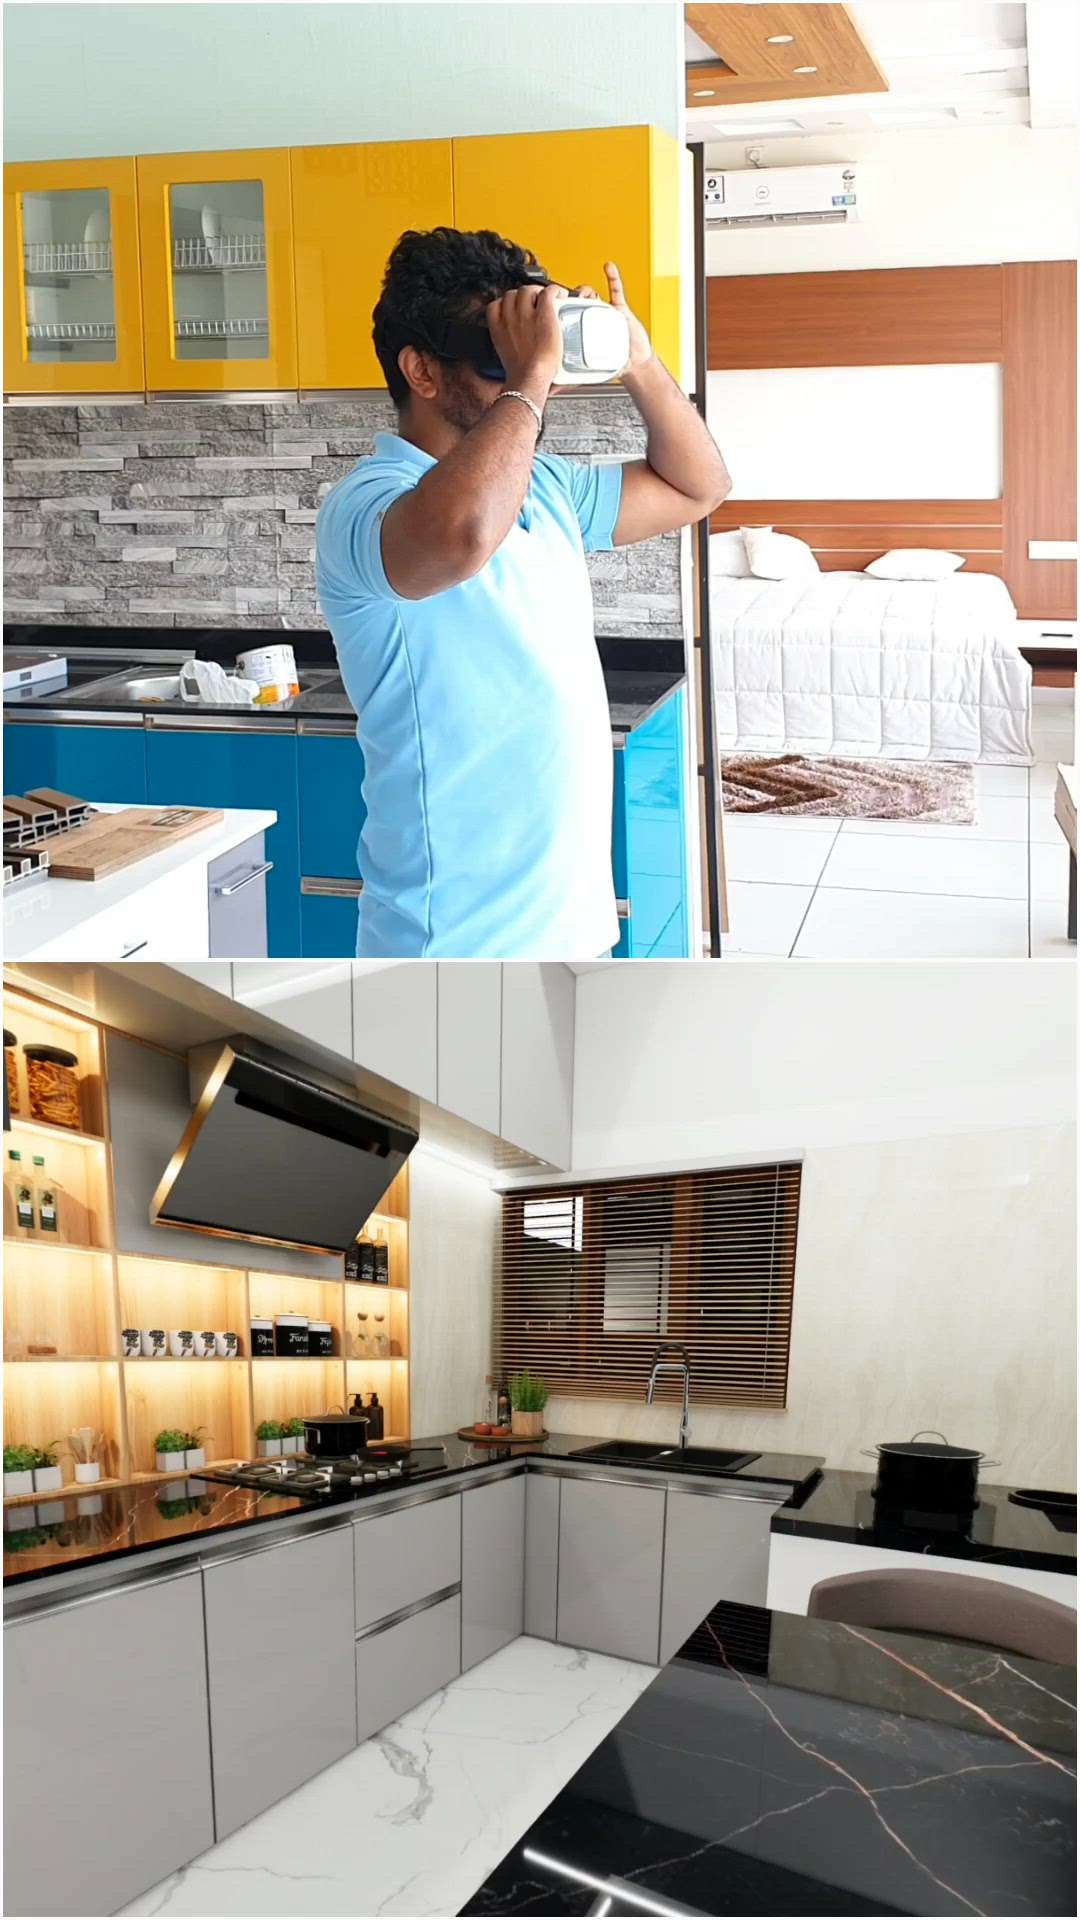 rayanco Interiors
7510690003

#ModularKitchen #KitchenInterior #HouseConstruction